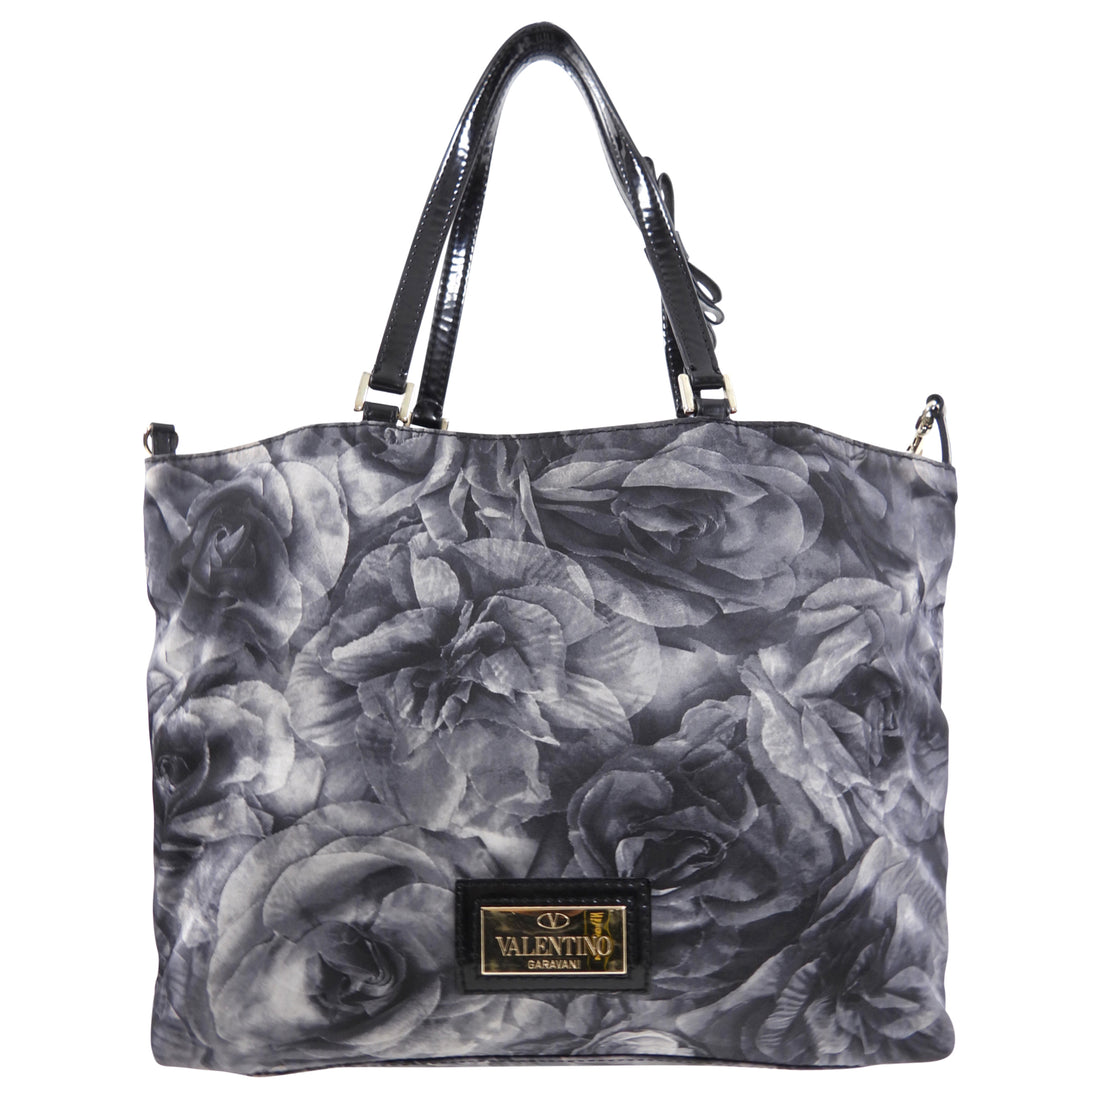 Valentino Grey Nylon Floral Small Tote Bag